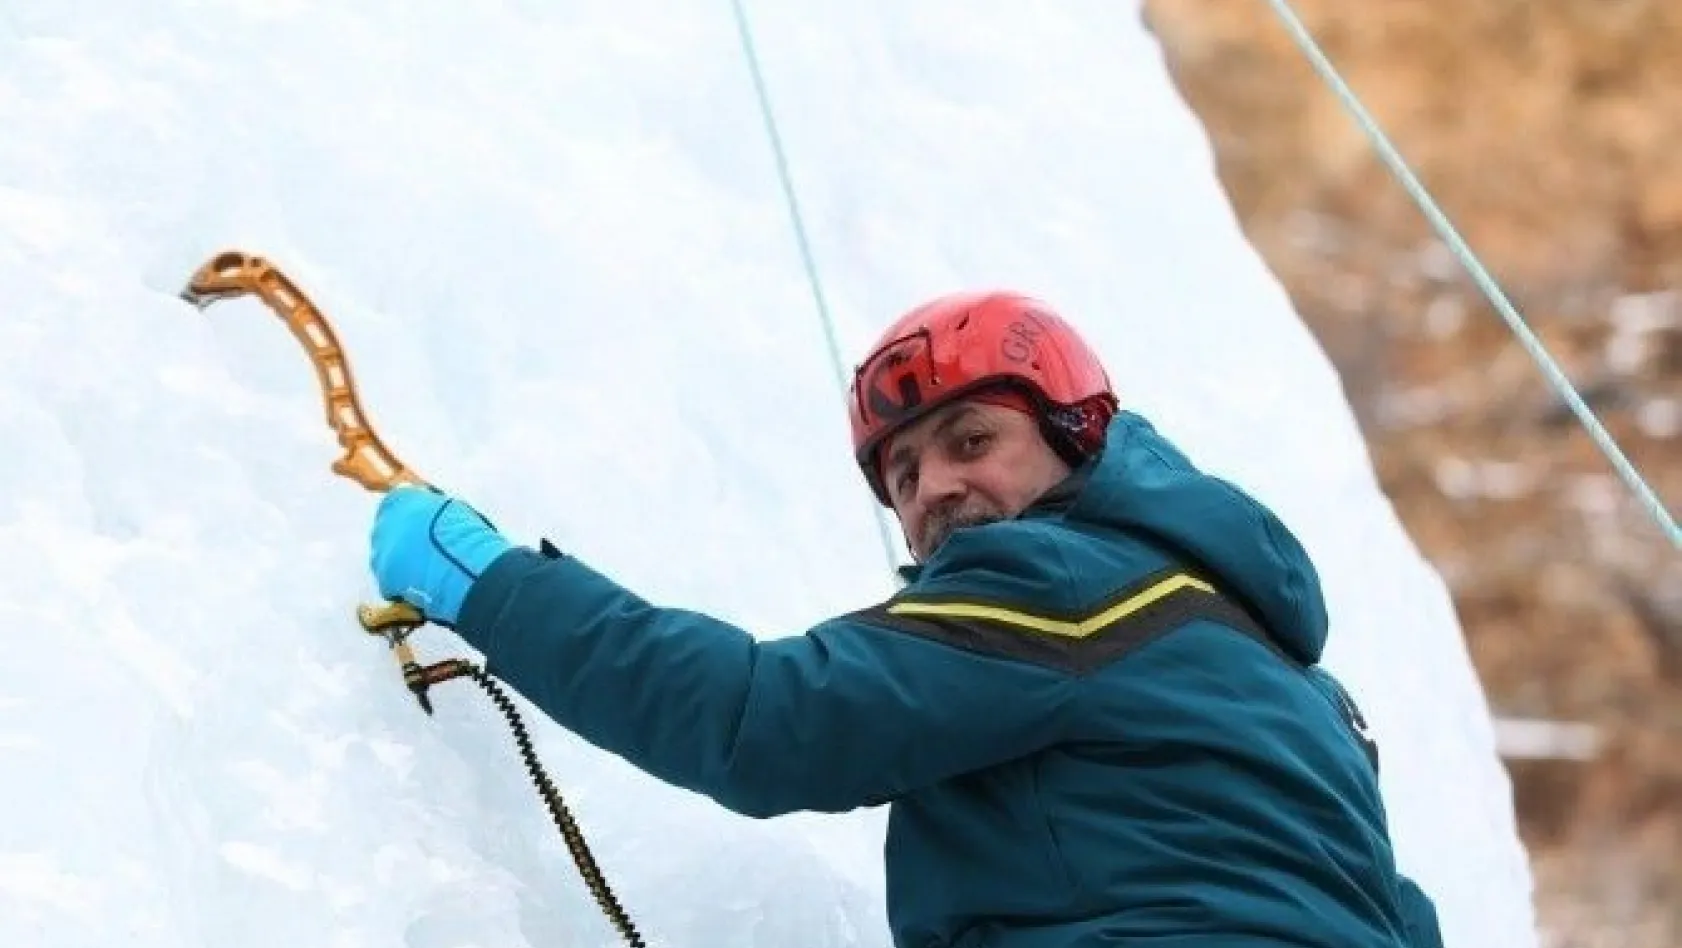 Vali Azizoğlu, 'Buza tırmanmak heyecan vericiydi'
